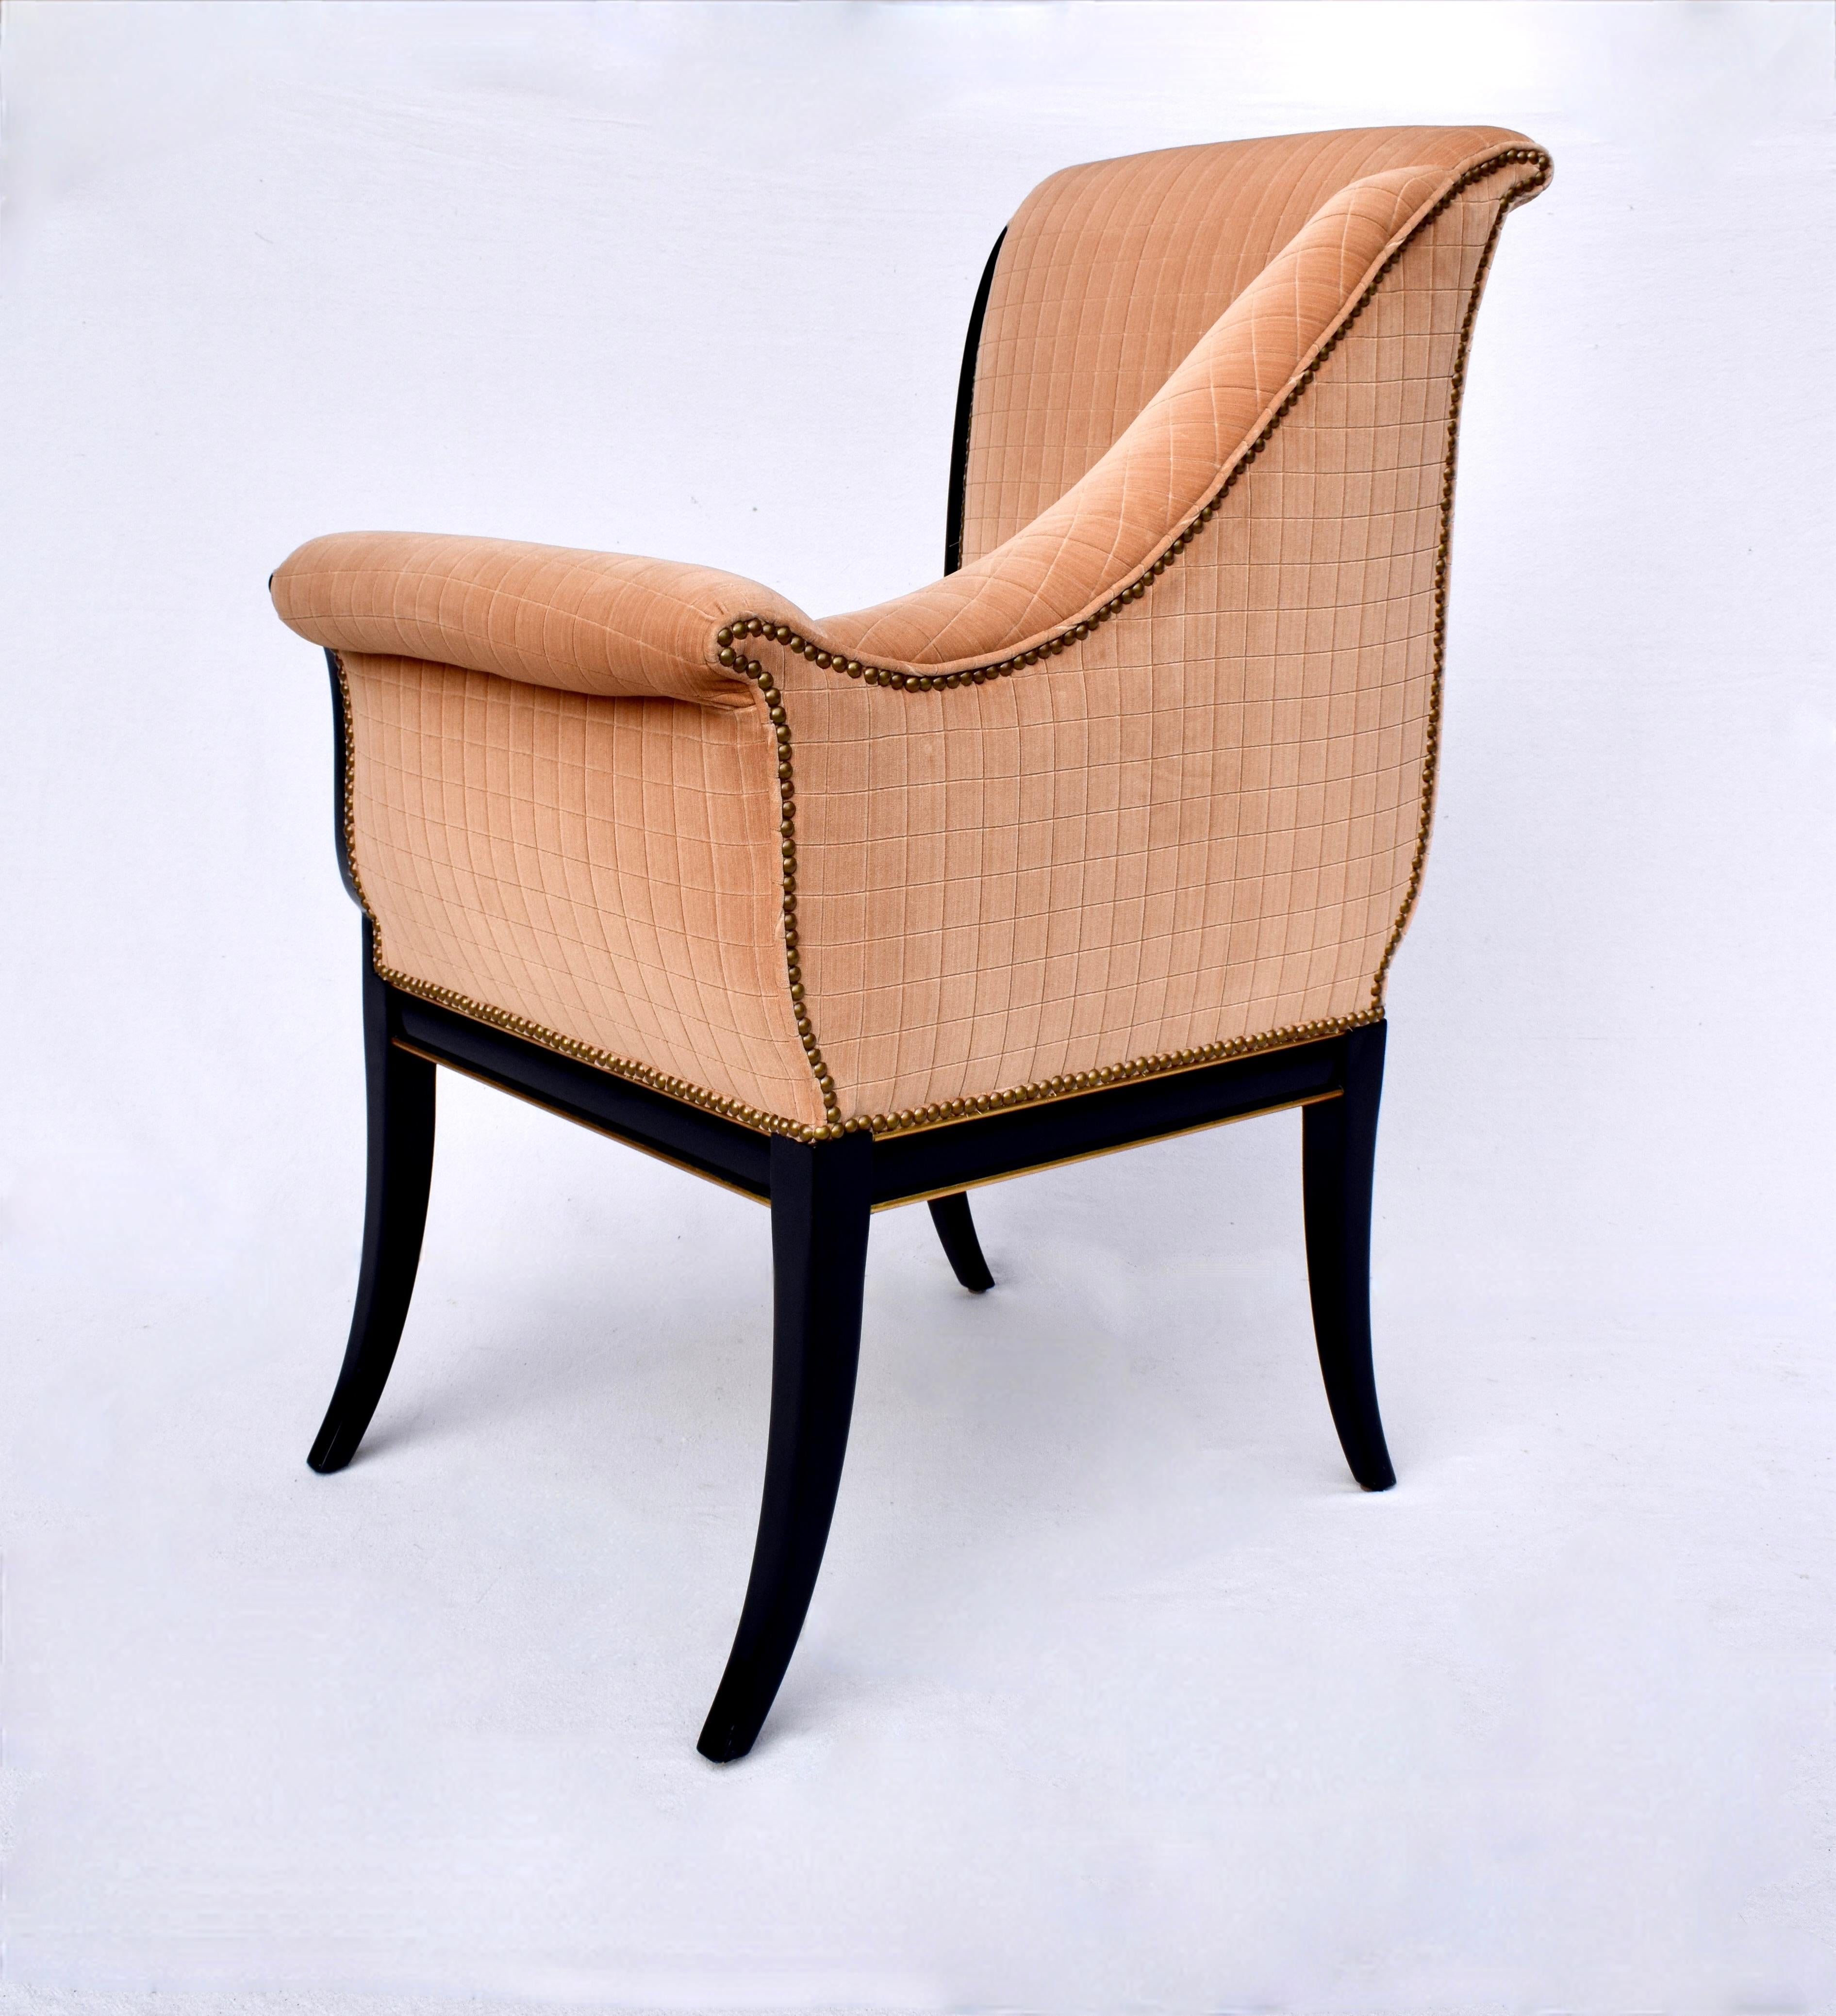 Karges Furniture Parler Deux Right & Left Regency Chairs For Sale 2